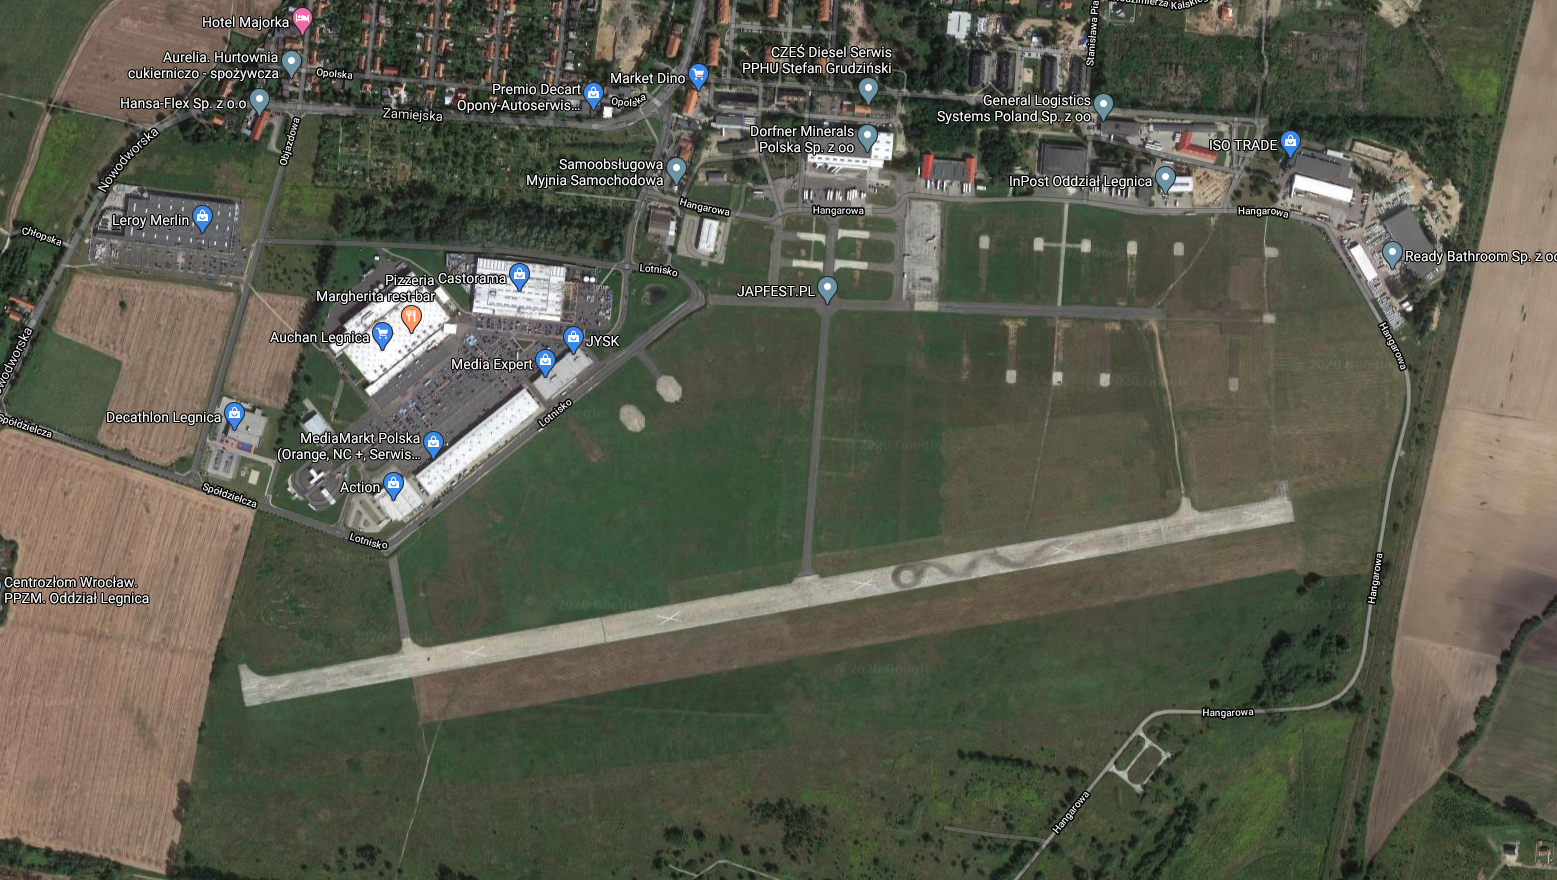 Lotnisko Legnica, widok z satelity. 2020 rok. Zdjęcie LAC